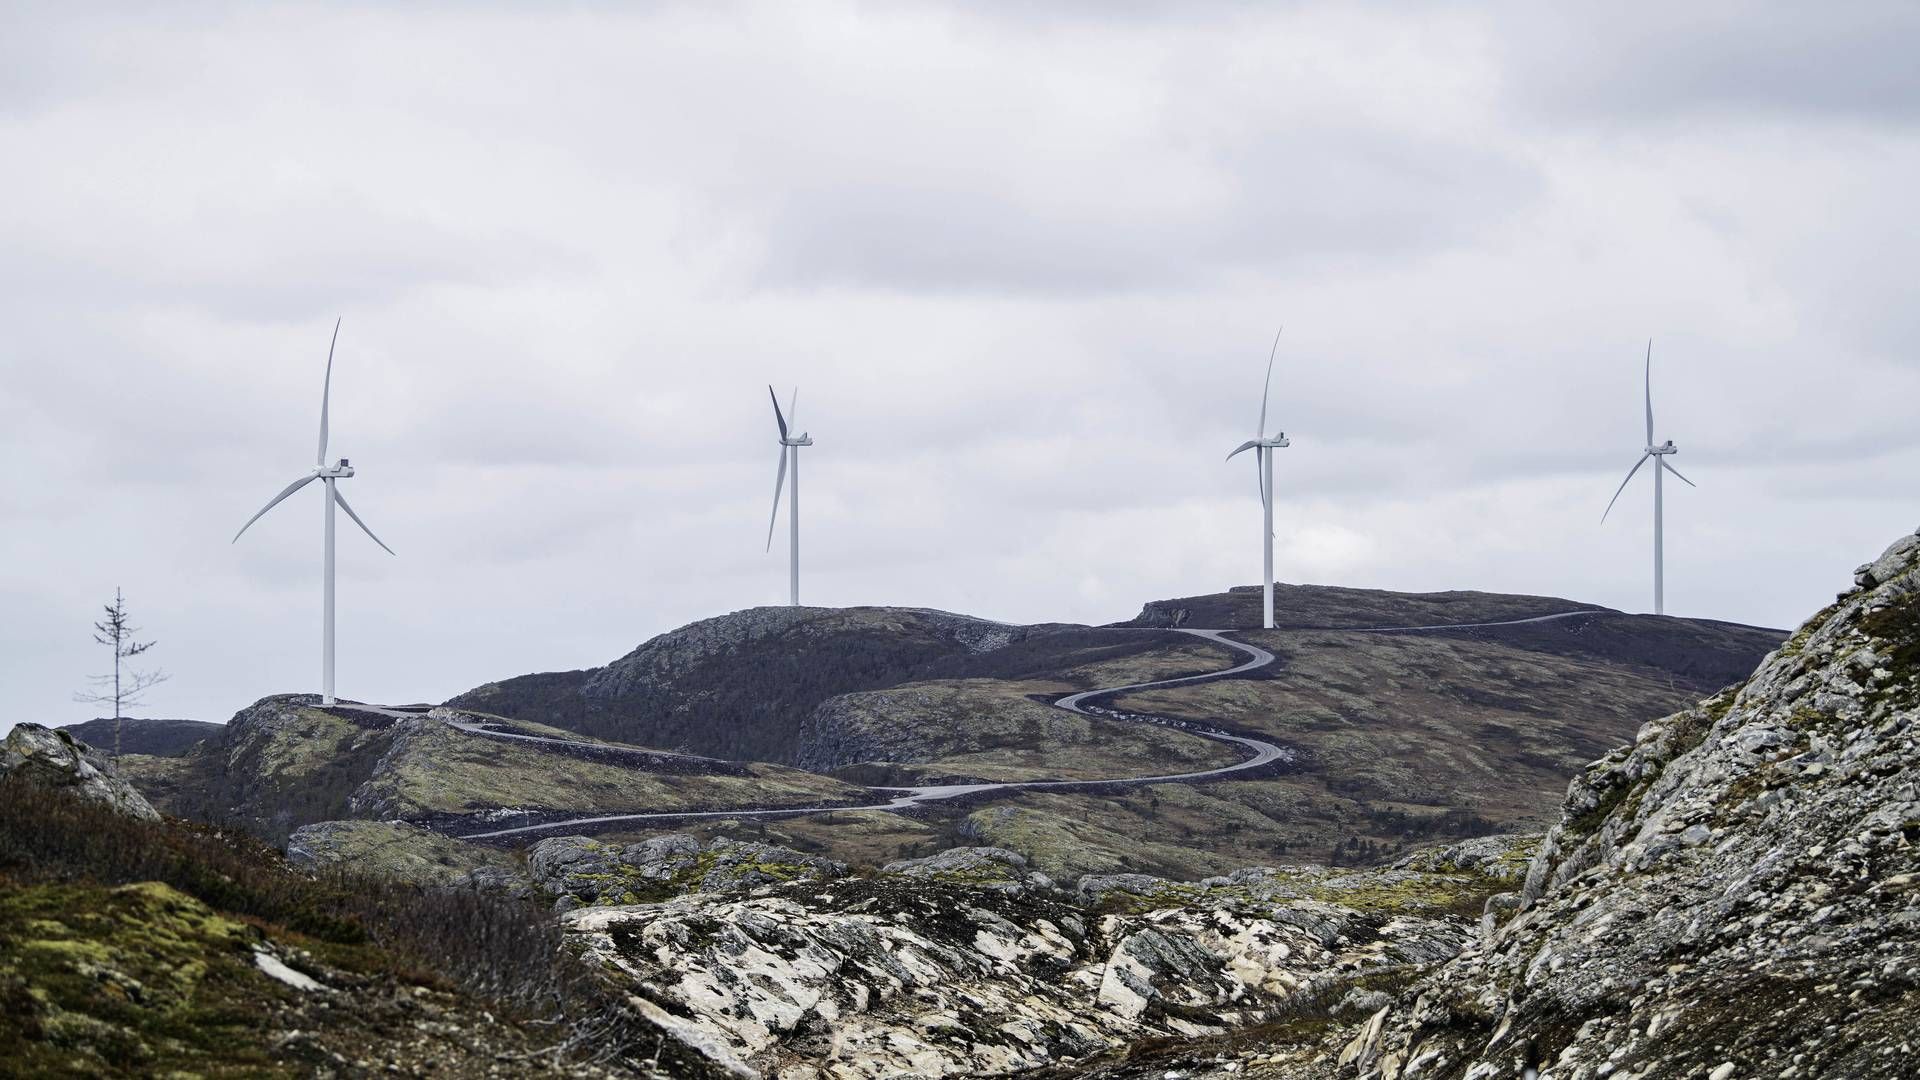 OMSTRDT: Roan vindkraftverk utgjør deler av stridens kjerne i Fosen-saken. 11. oktober er det ett år siden dommen i Høyesterett | Foto: Ole Martin Wold/Statkraft